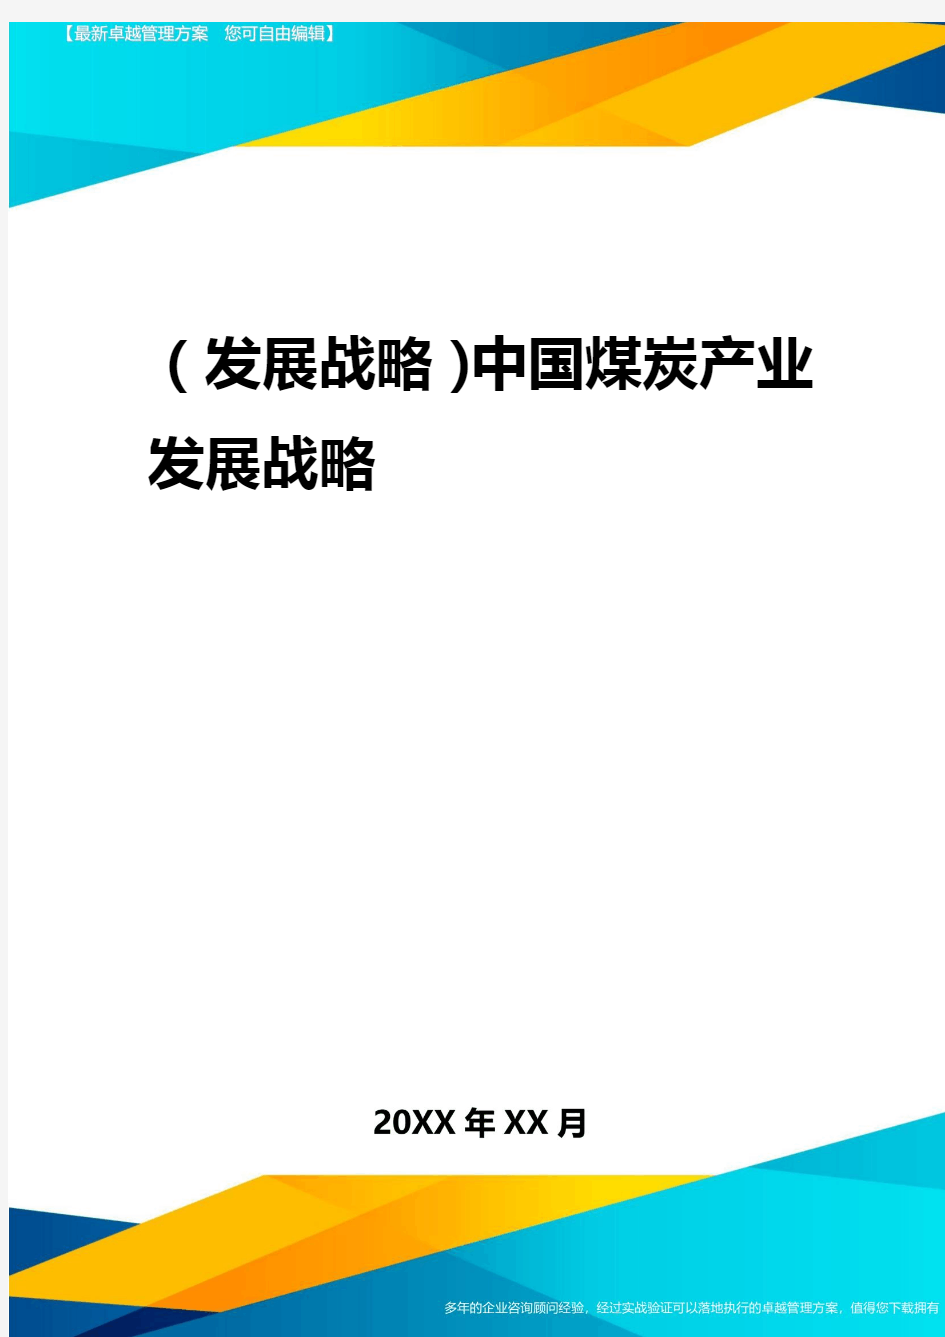 2020年(发展战略)中国煤炭产业发展战略